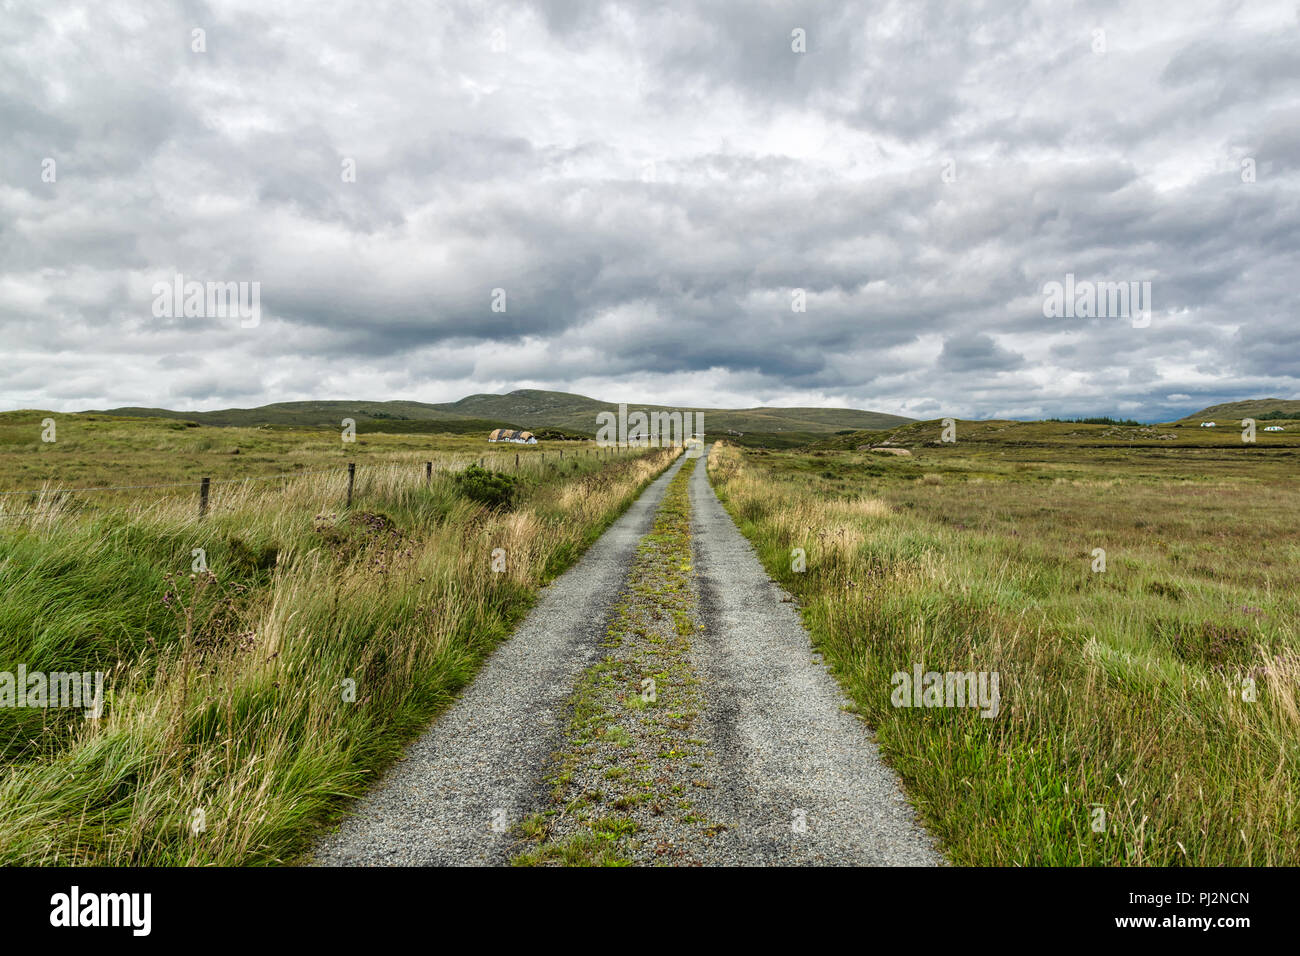 Esta es una fotografía de un camino rural a través de las montañas de Irlanda. Fue tomada en Donegal, Irlanda. Foto de stock